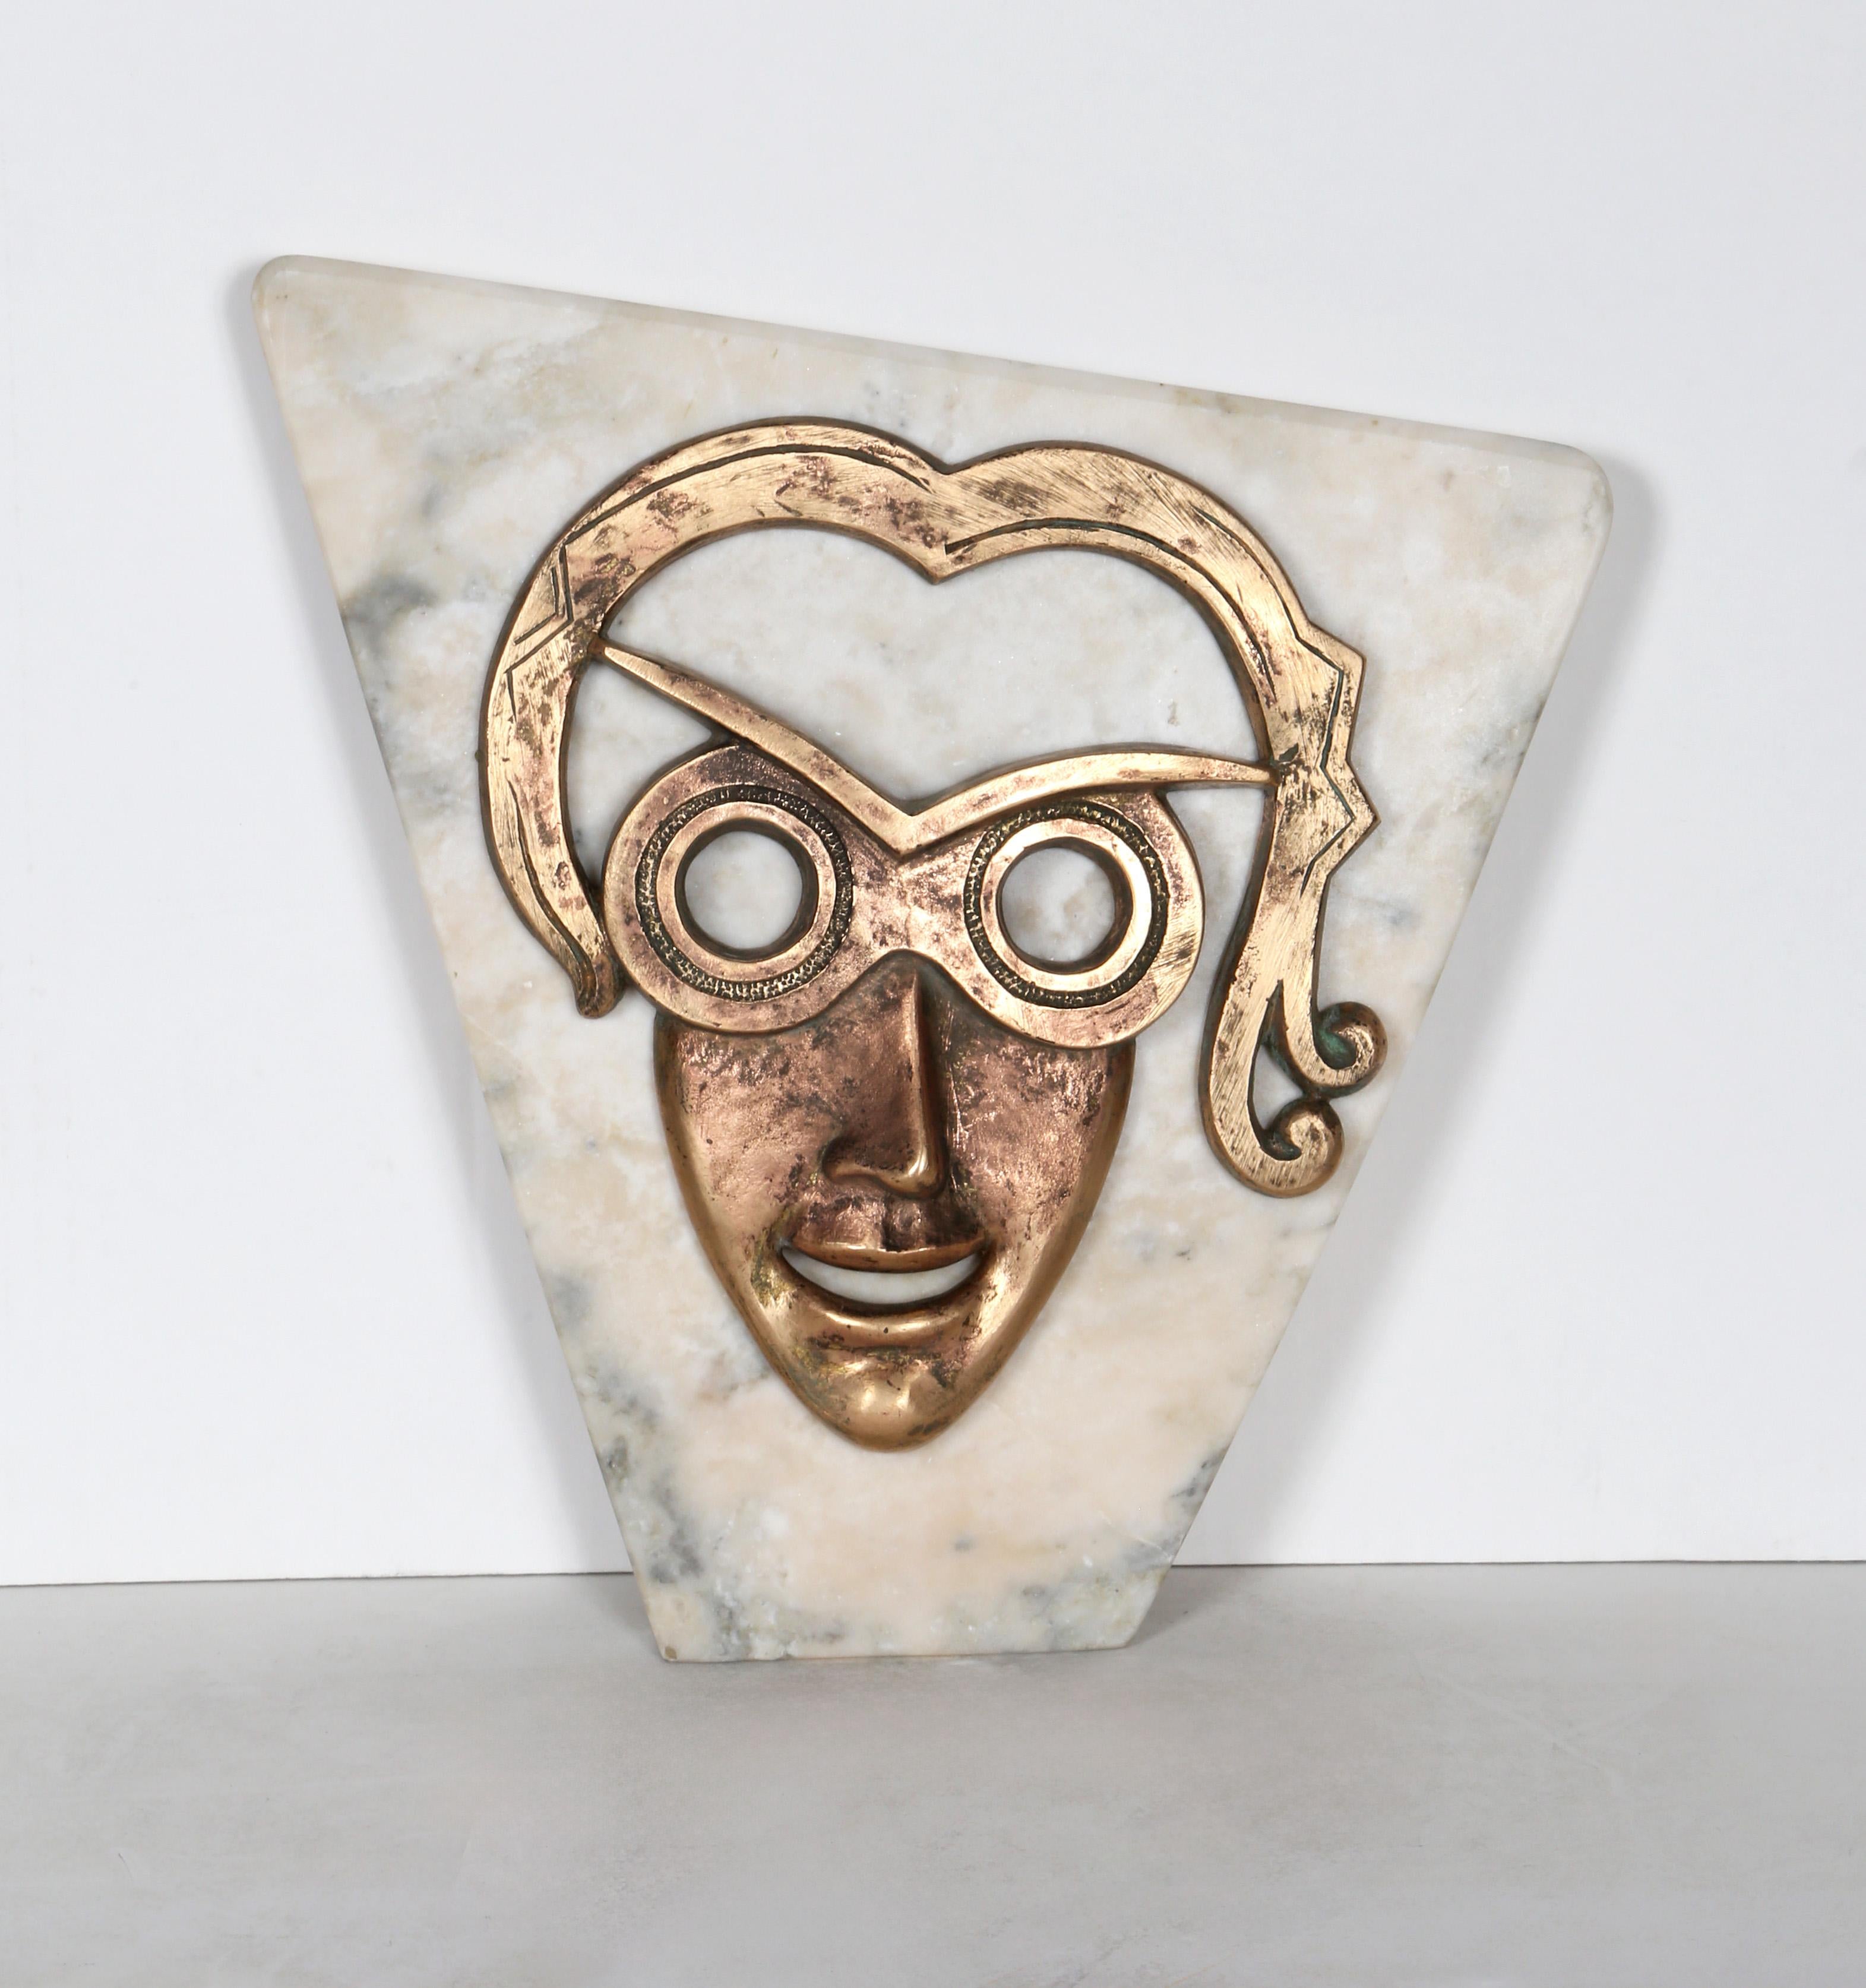 Ce portrait en bronze de Constantin Antonovici est posé directement sur la surface d'une plaque de marbre blanc taillée. Des yeux intenses et creux se détachent d'un visage souriant, créant l'image troublante d'une femme piégée dans la